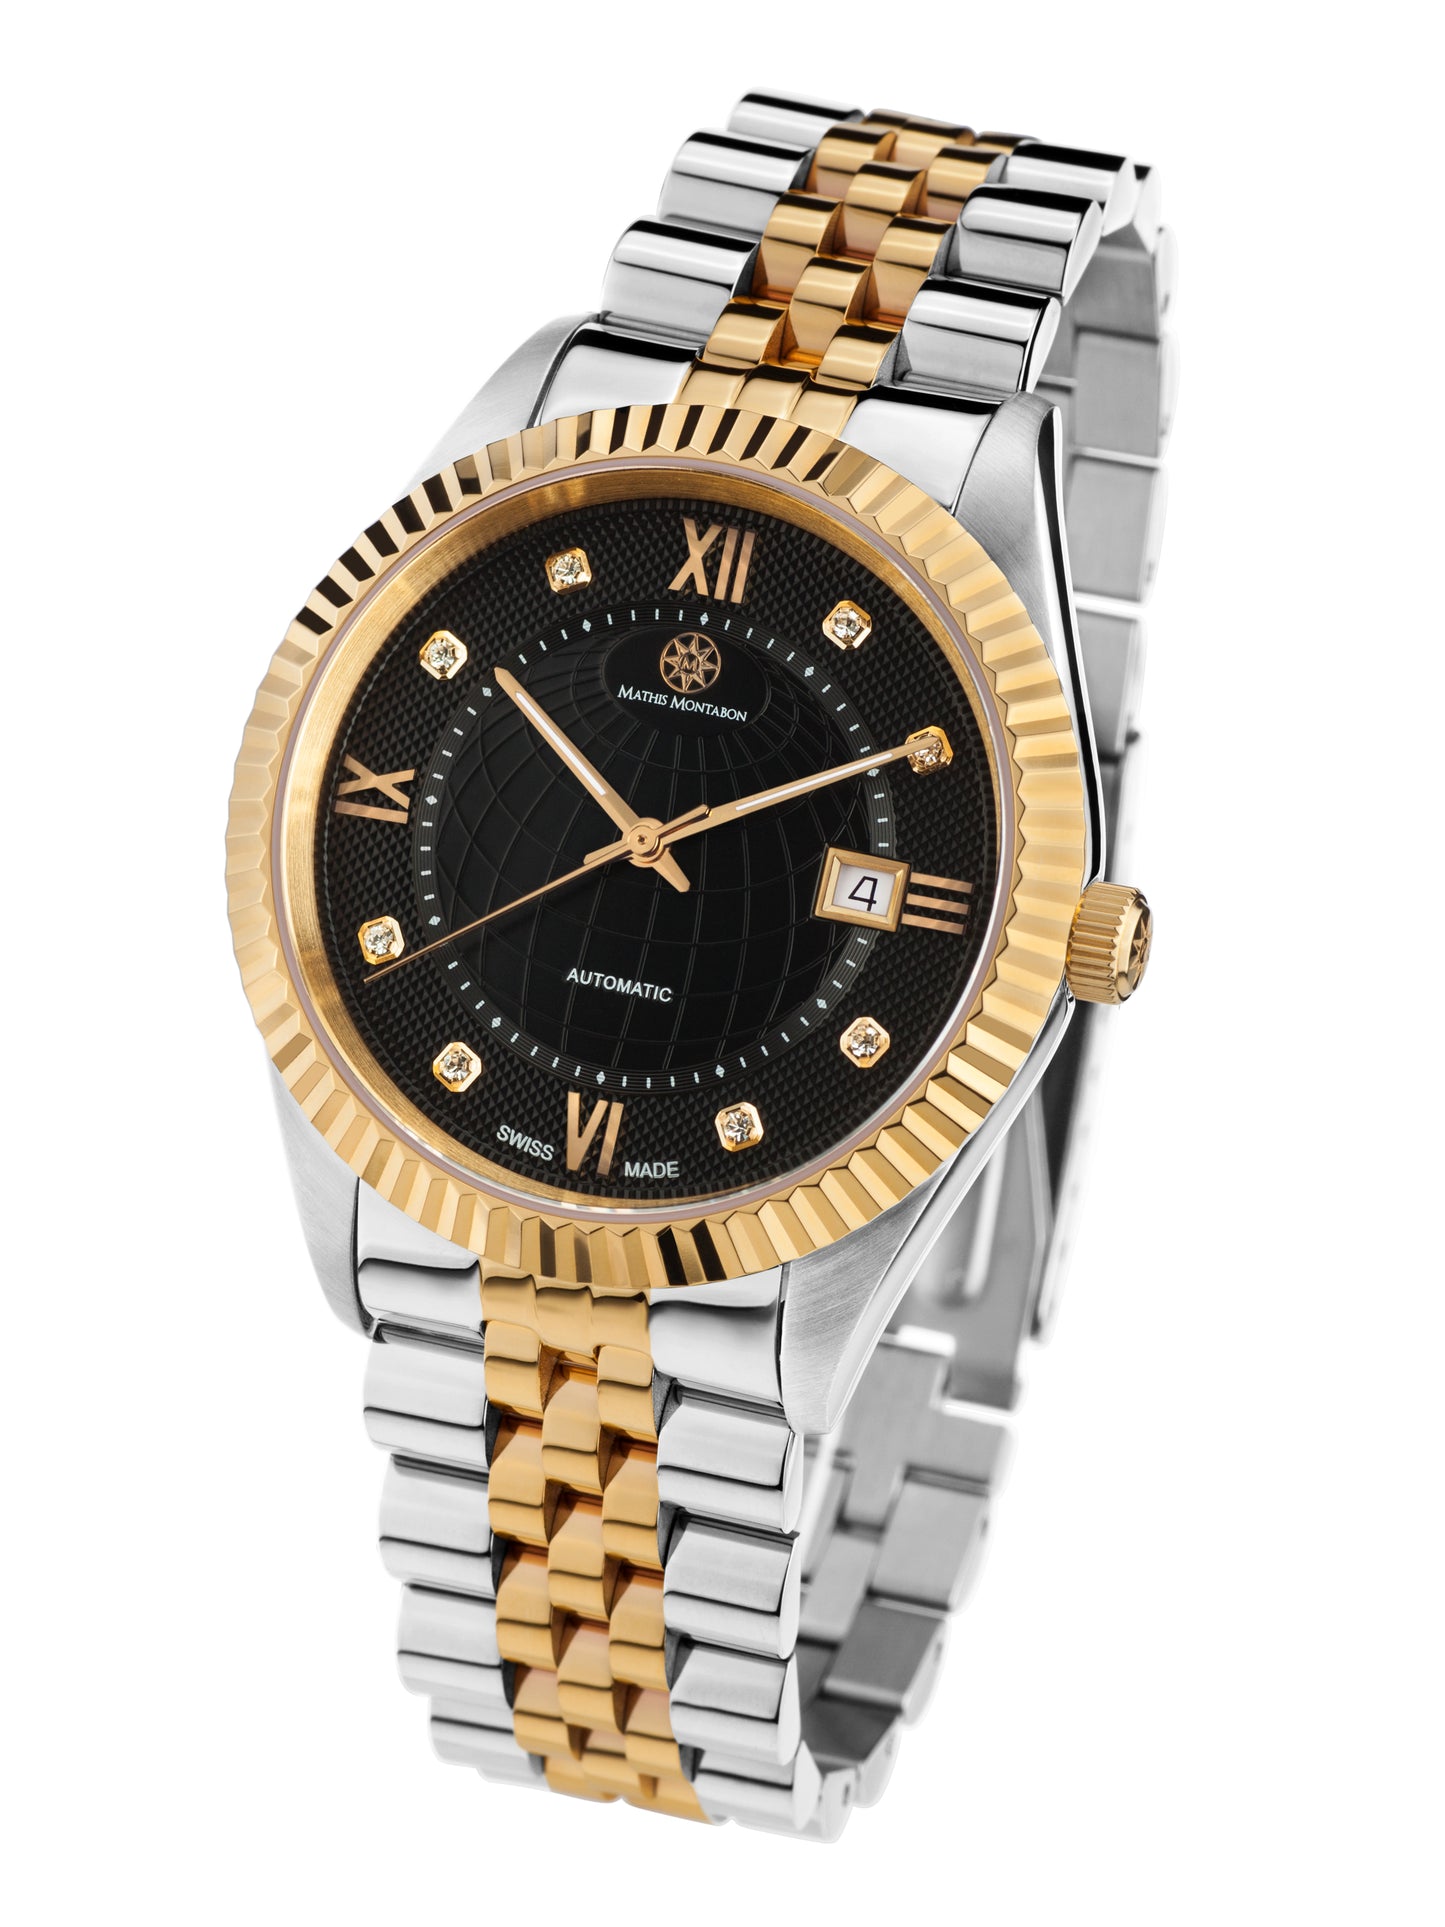 Automatic watches — Beauté de Suisse — Mathis Montabon — Gold IP Schwarz Two Tone